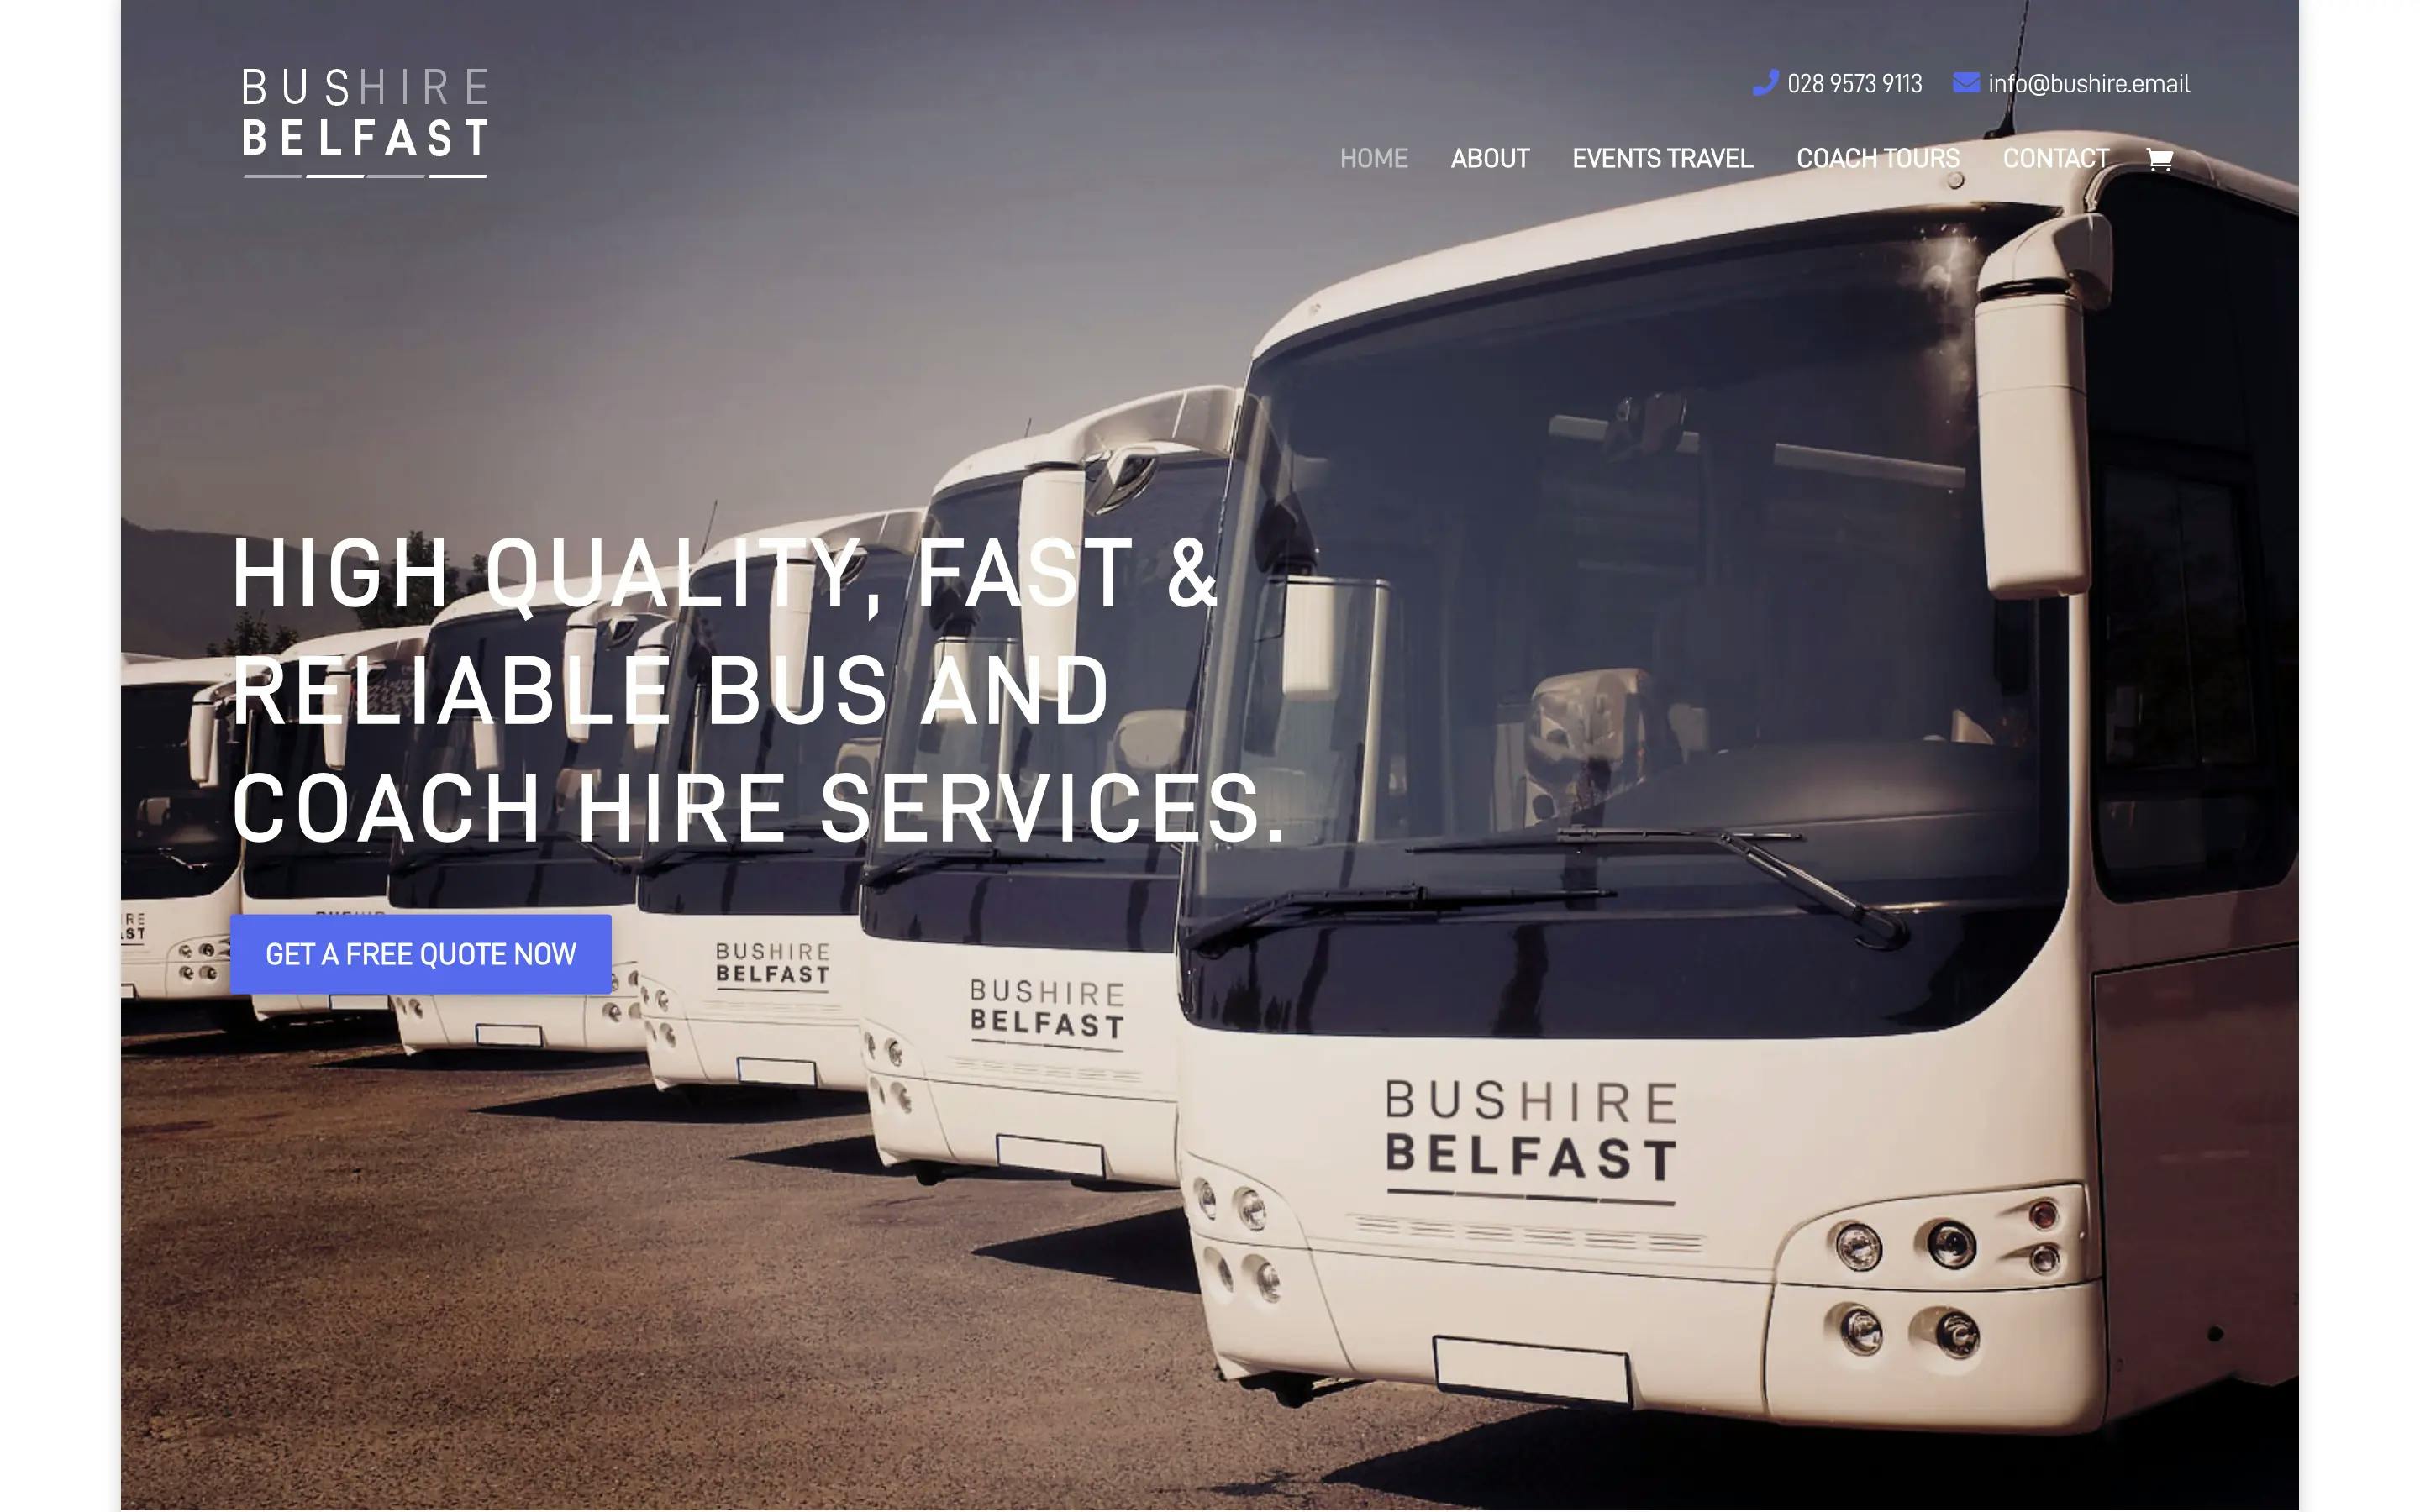 Bus Hire Belfast website homepage screenshot